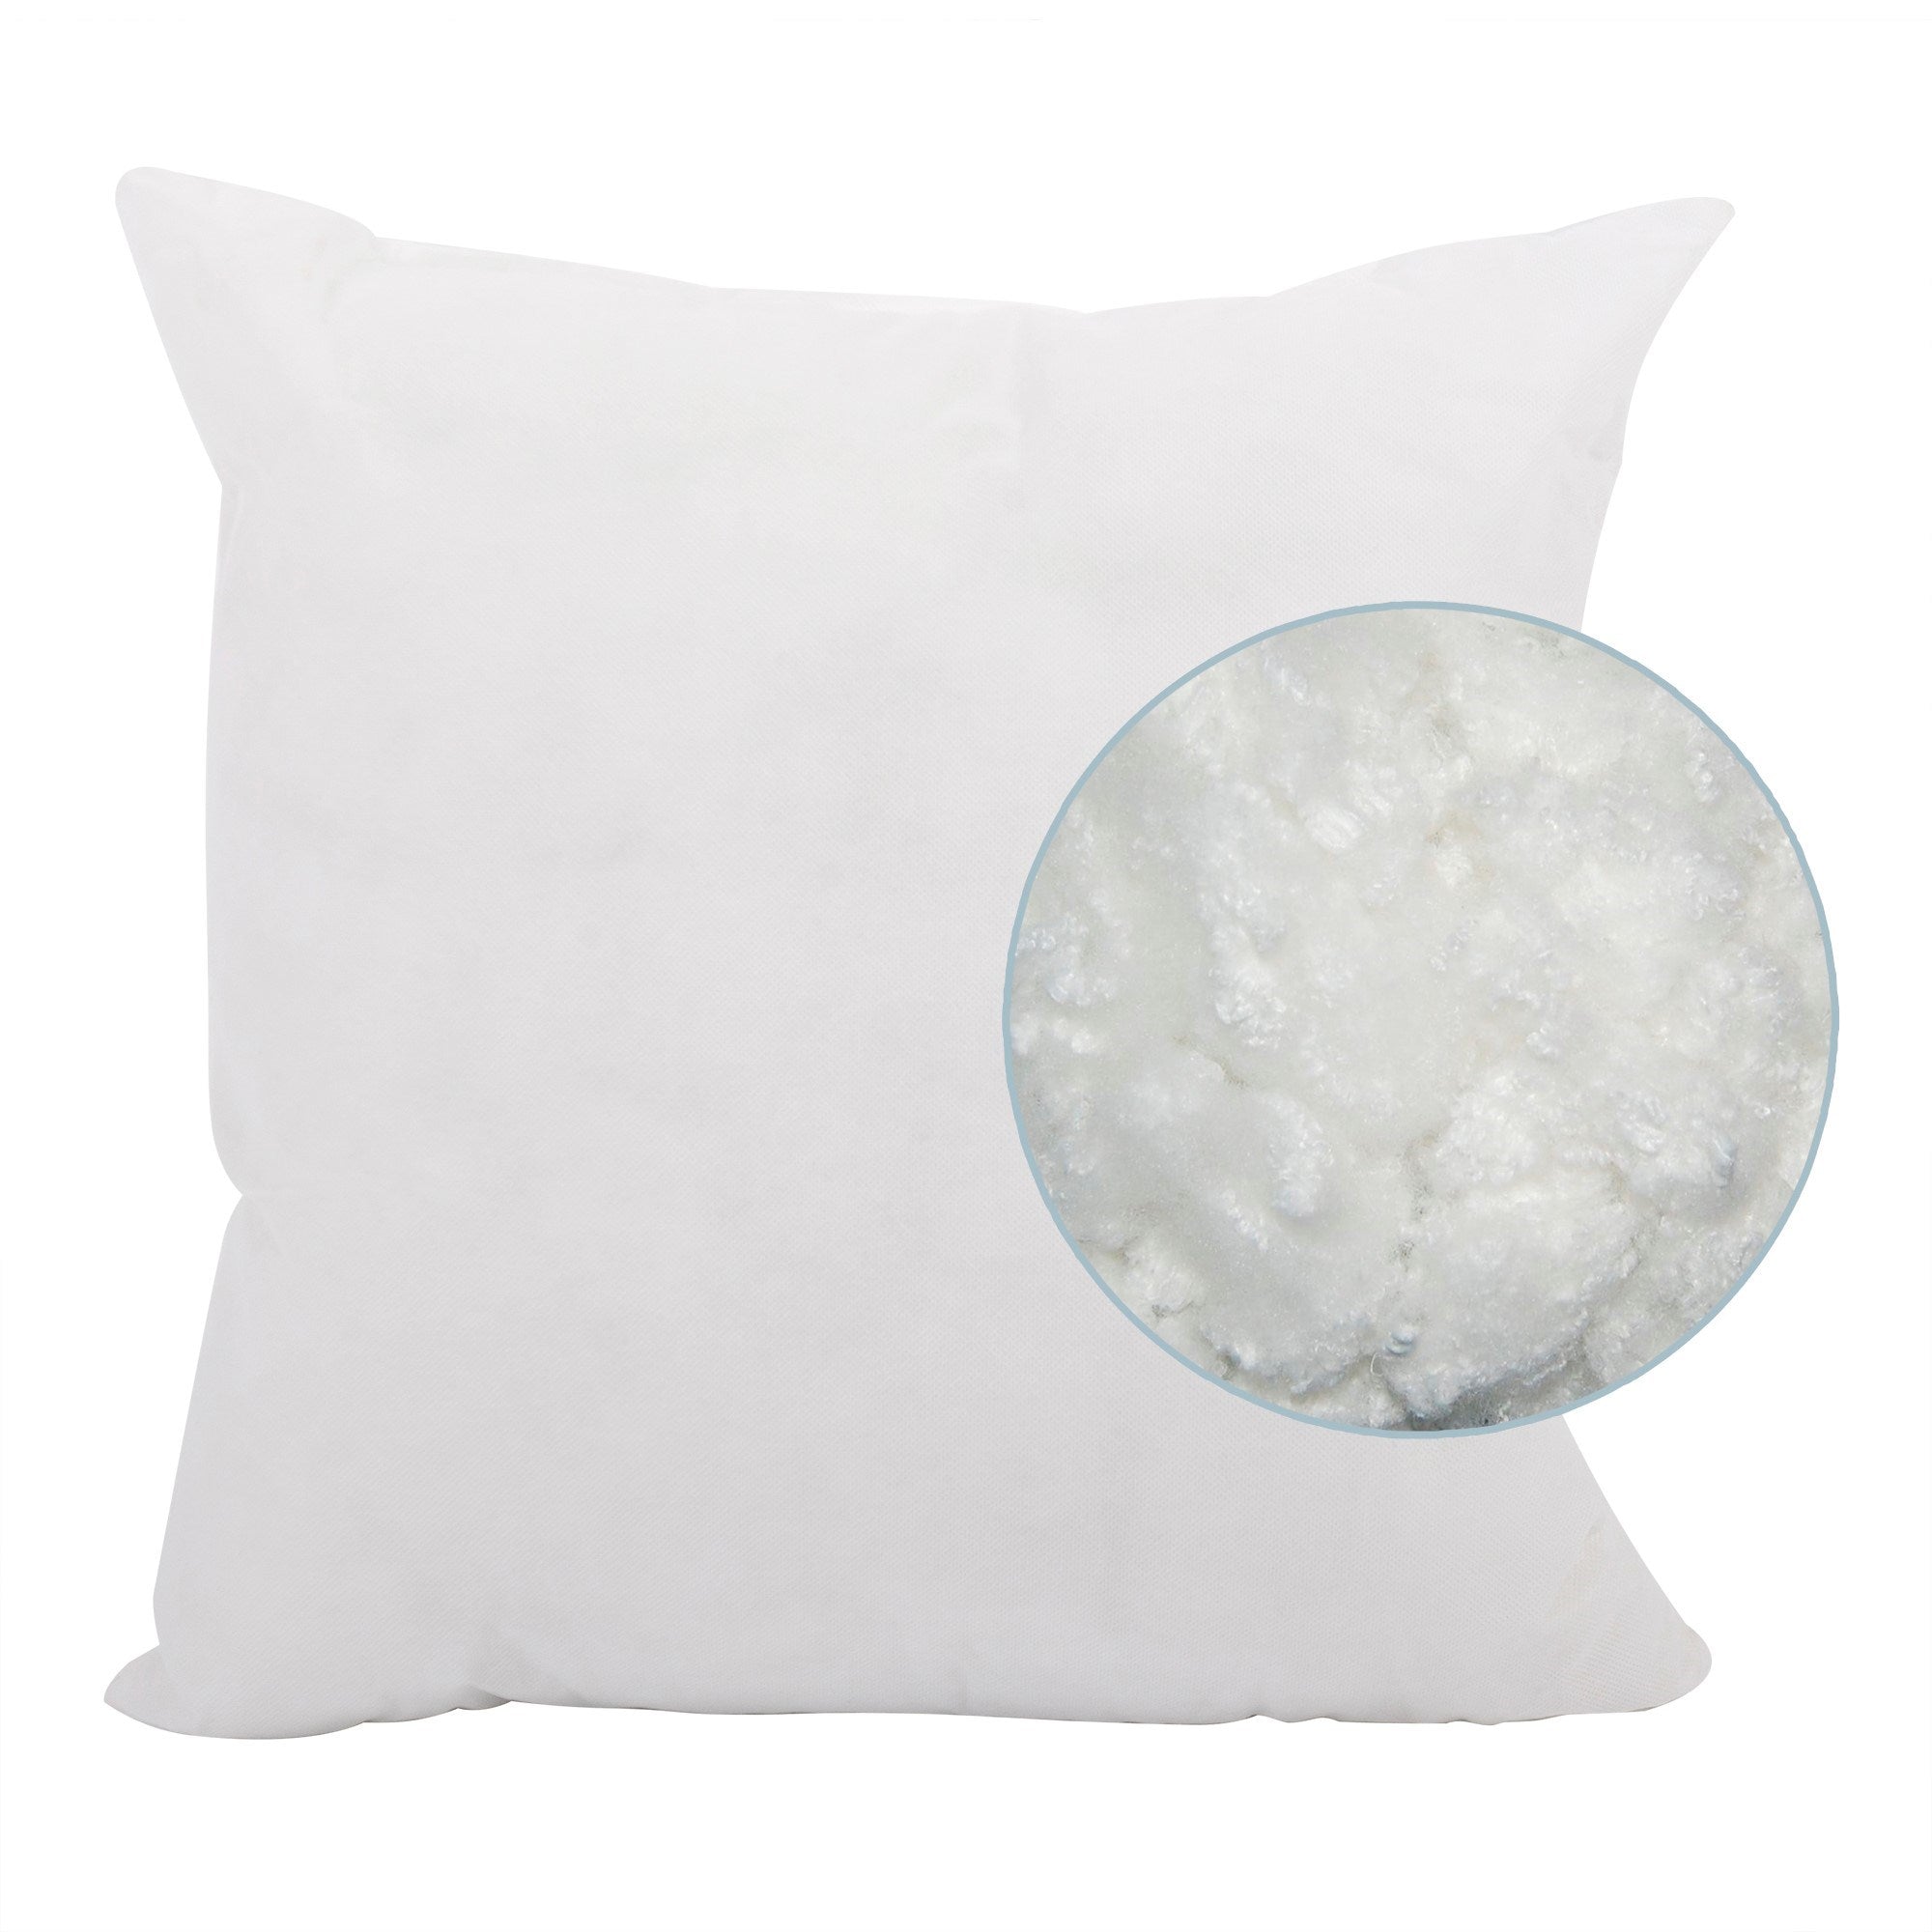 Avanti White Poly Pillow- 24" x 24"